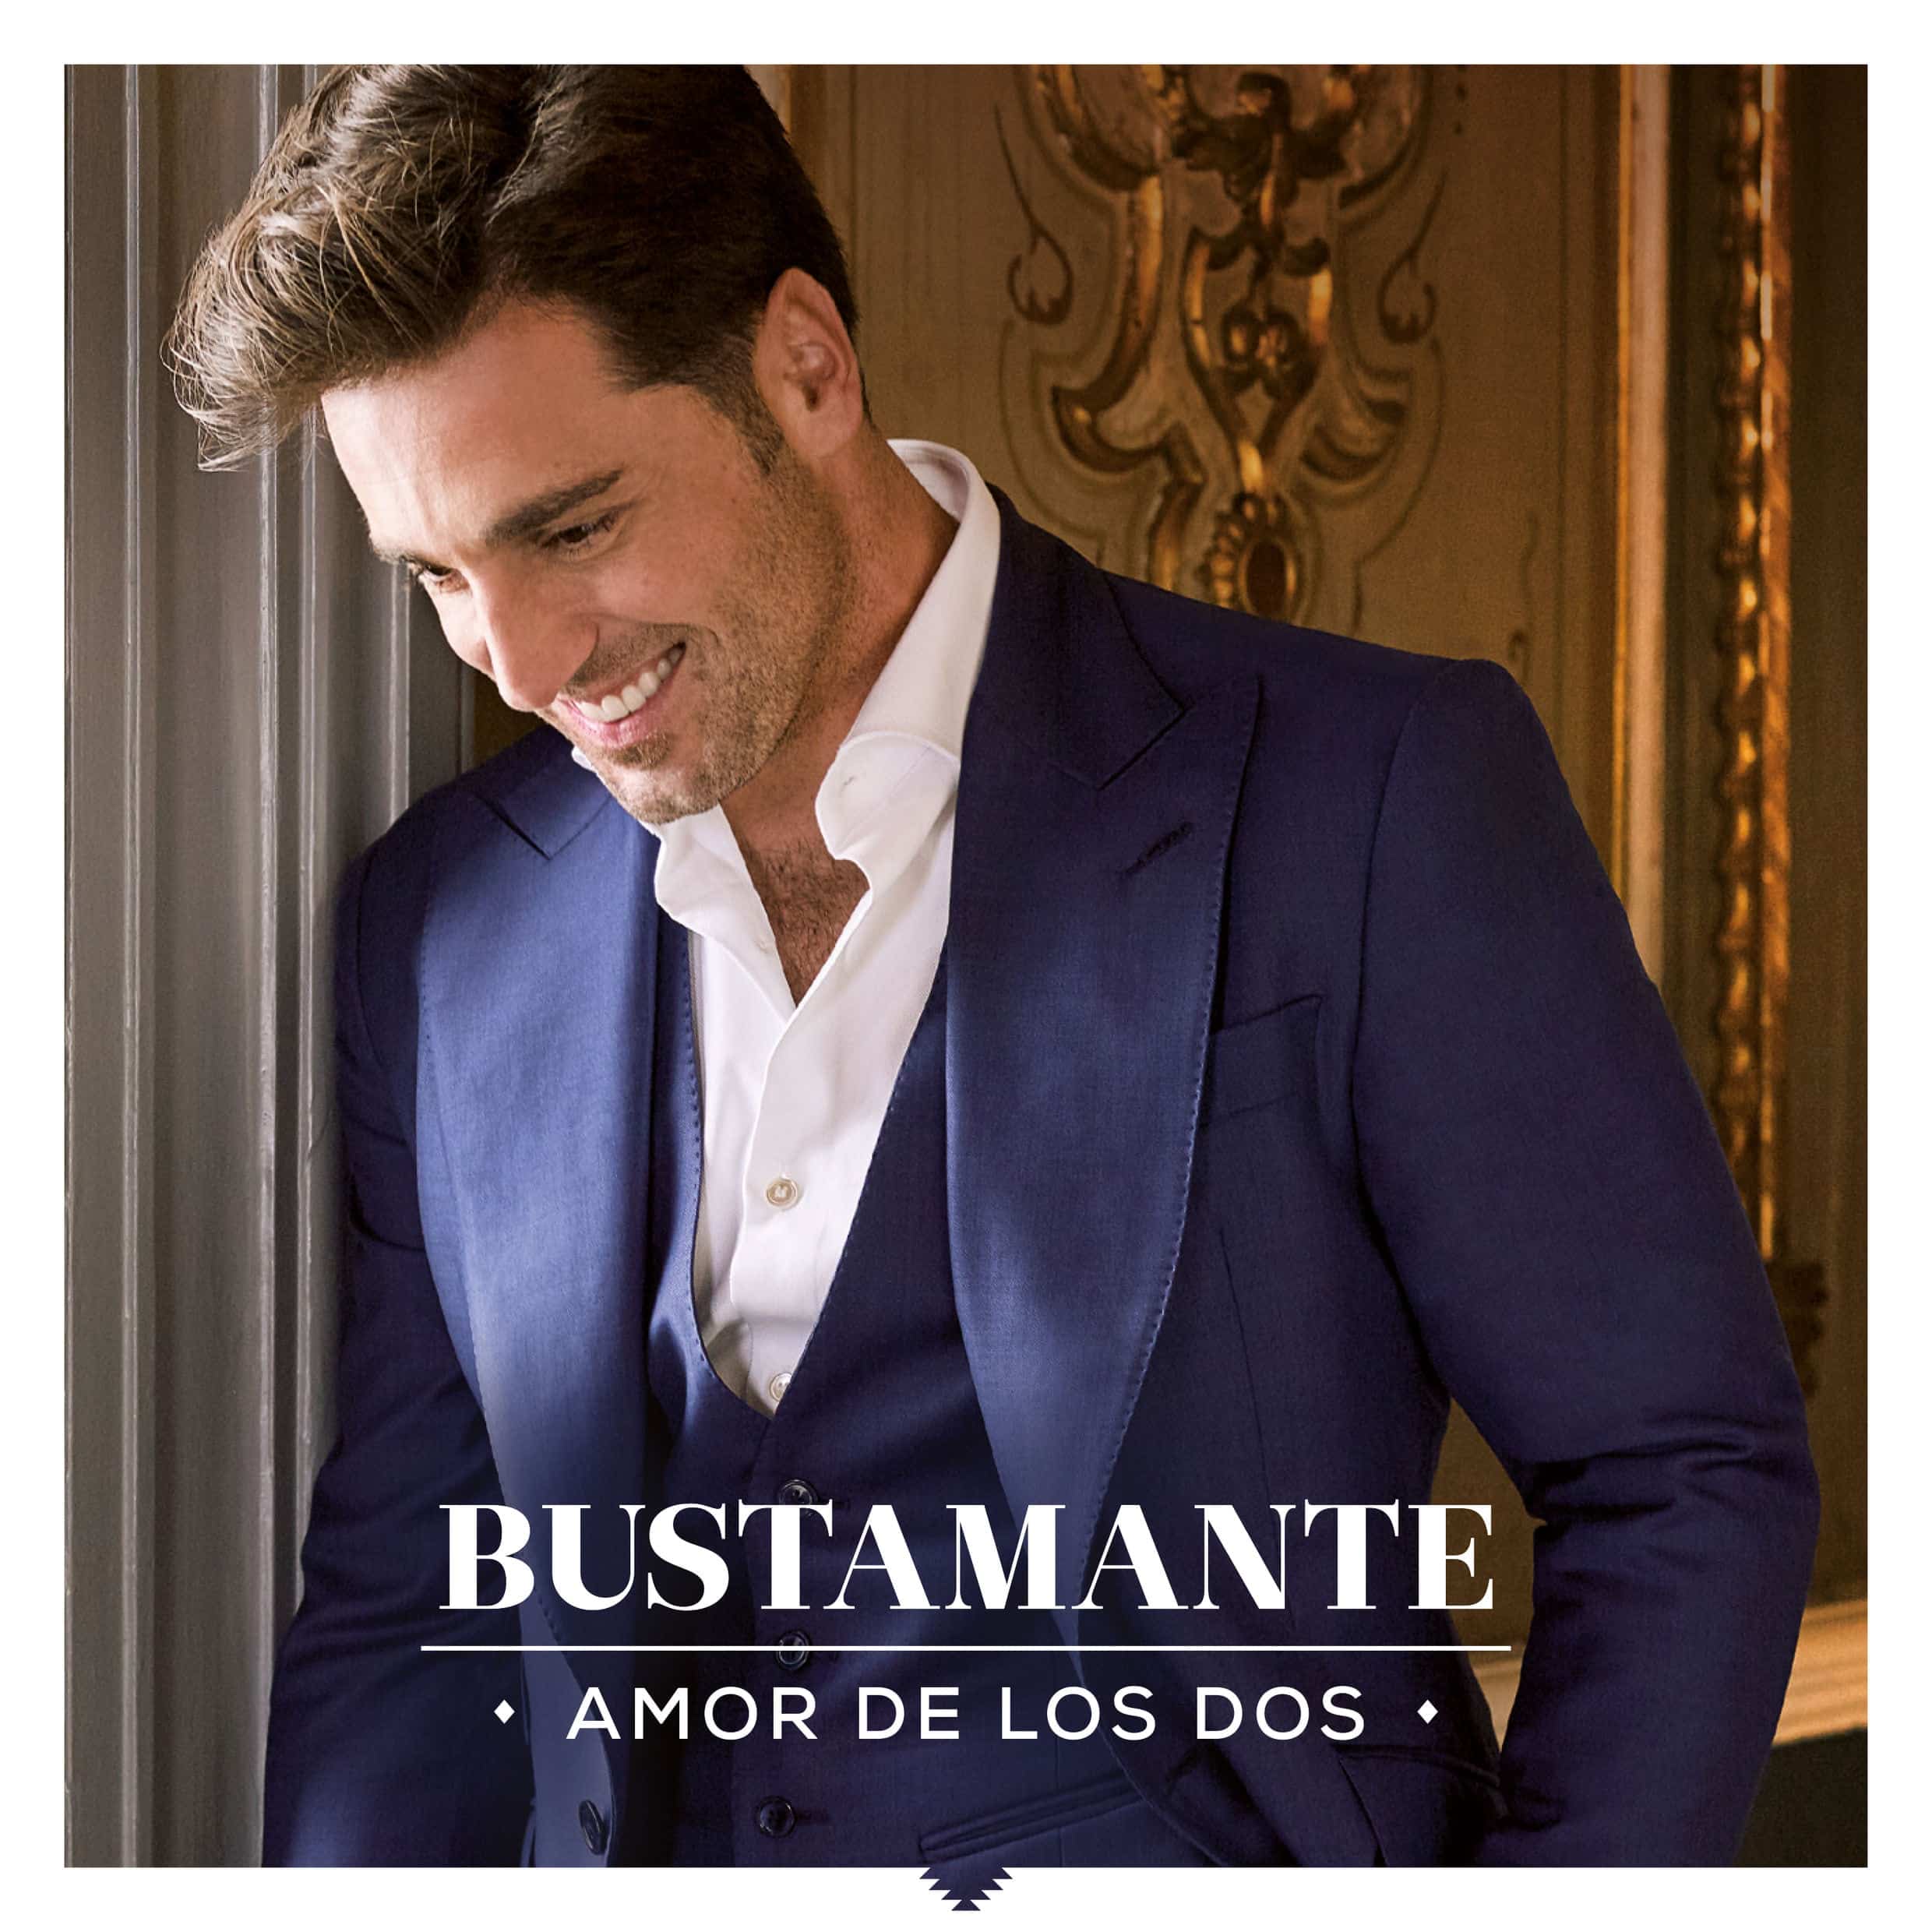 Bustamante-Amor-de-los-dos-2016-2480x2480